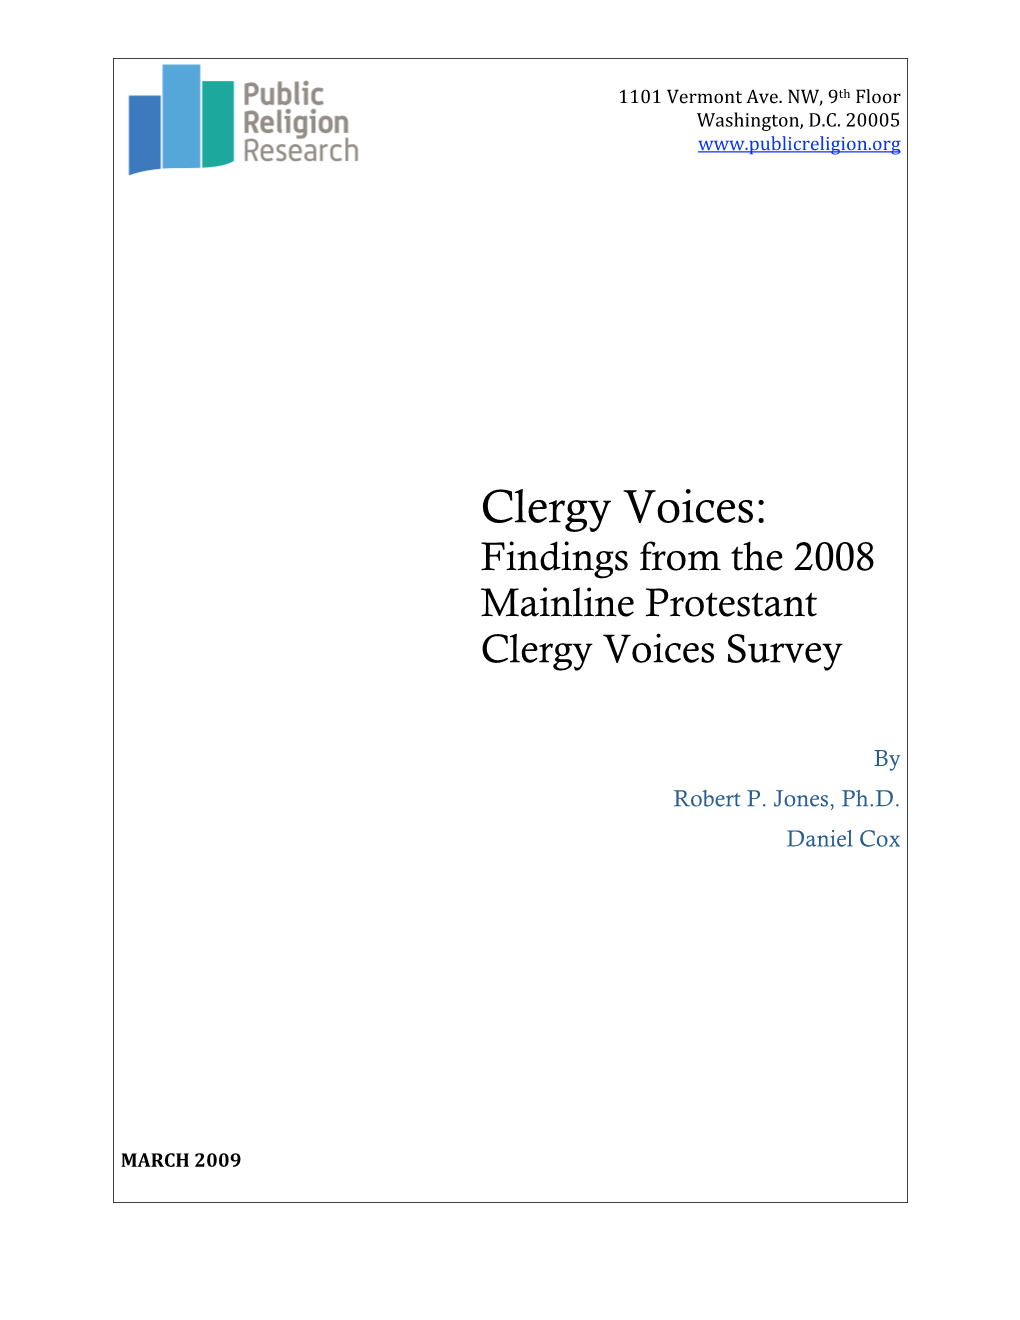 2008 Mainline Protestant Clergy Voice Survey